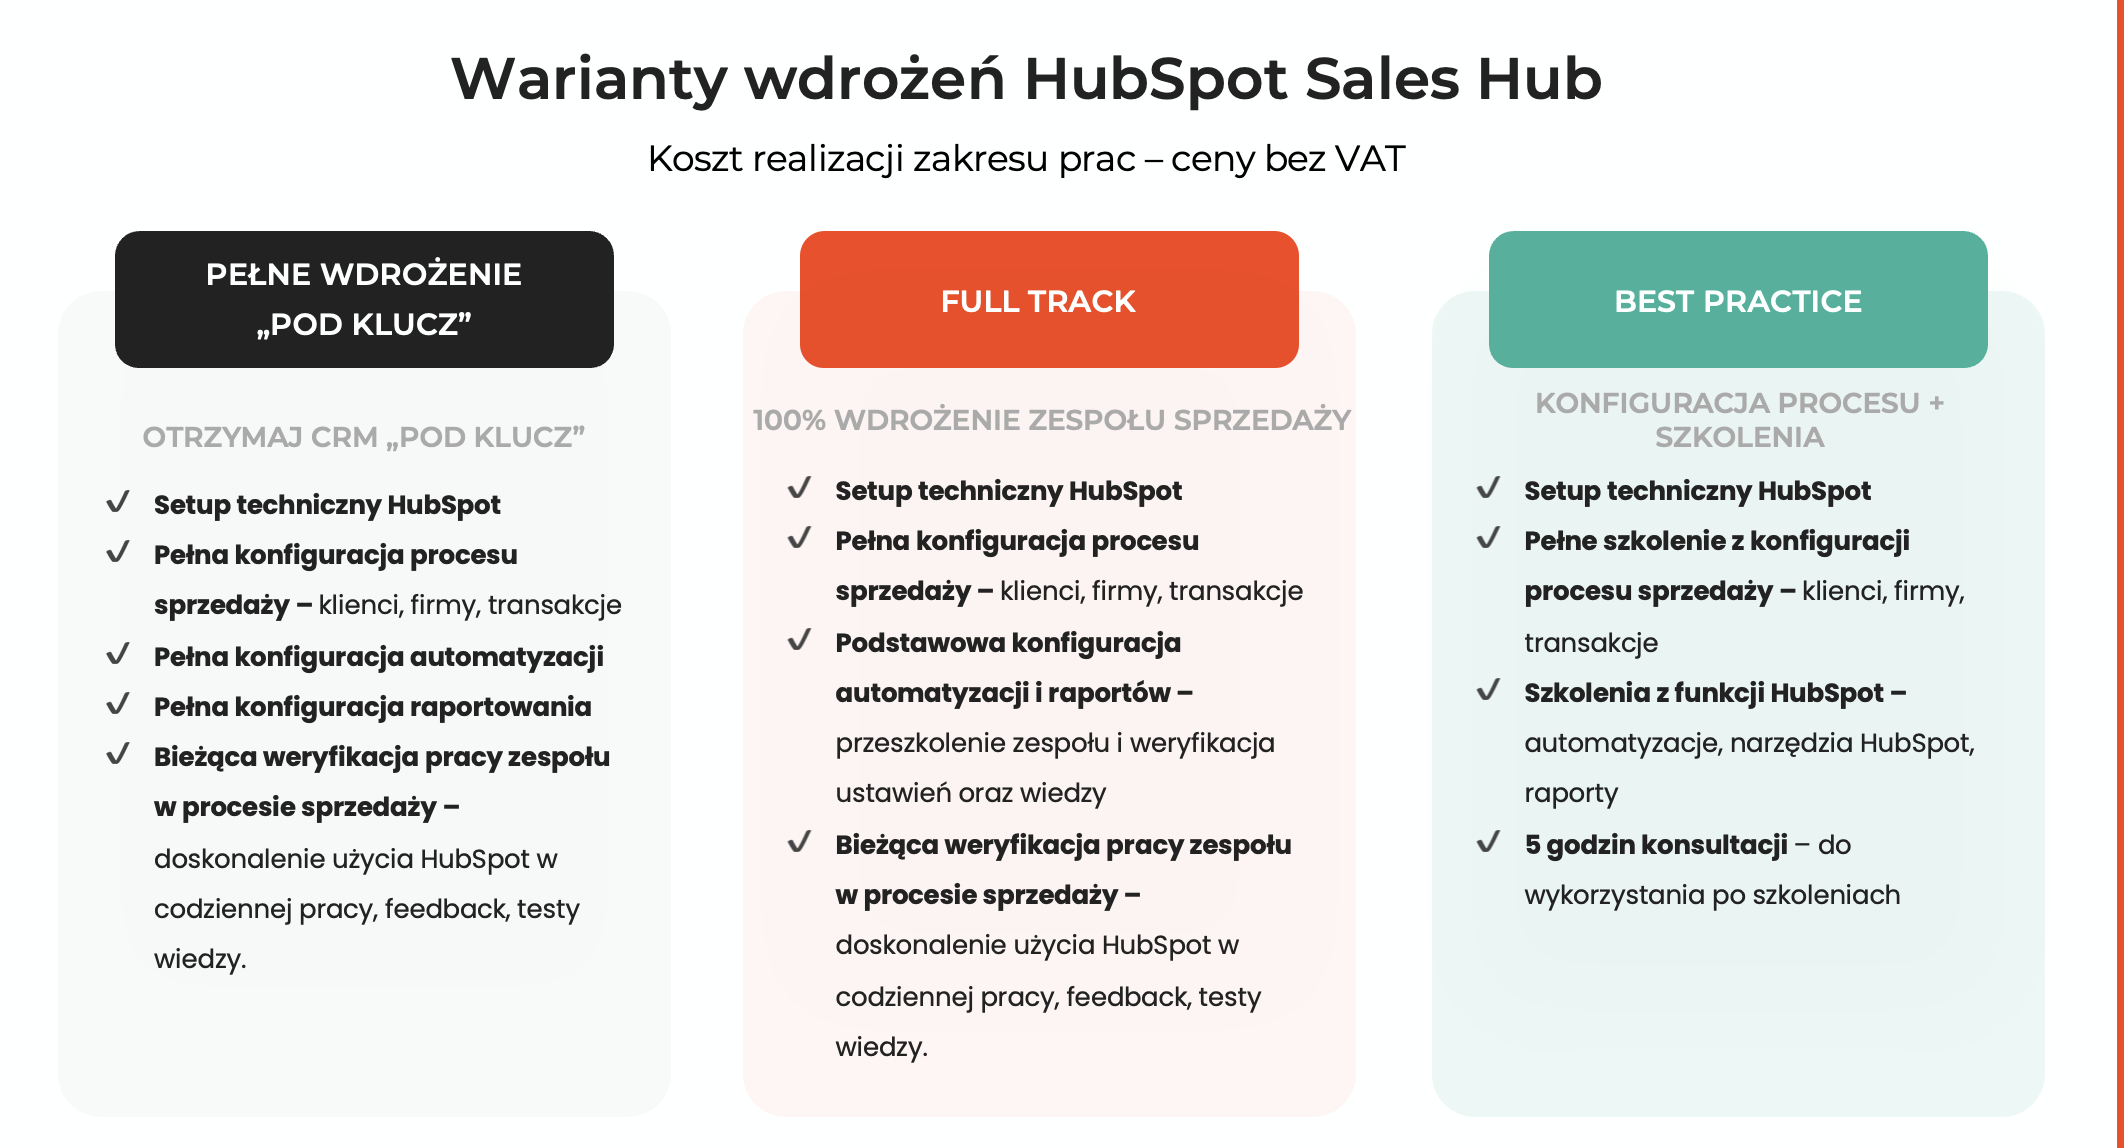 warianty wdrożeń HubSpot Sales Hub